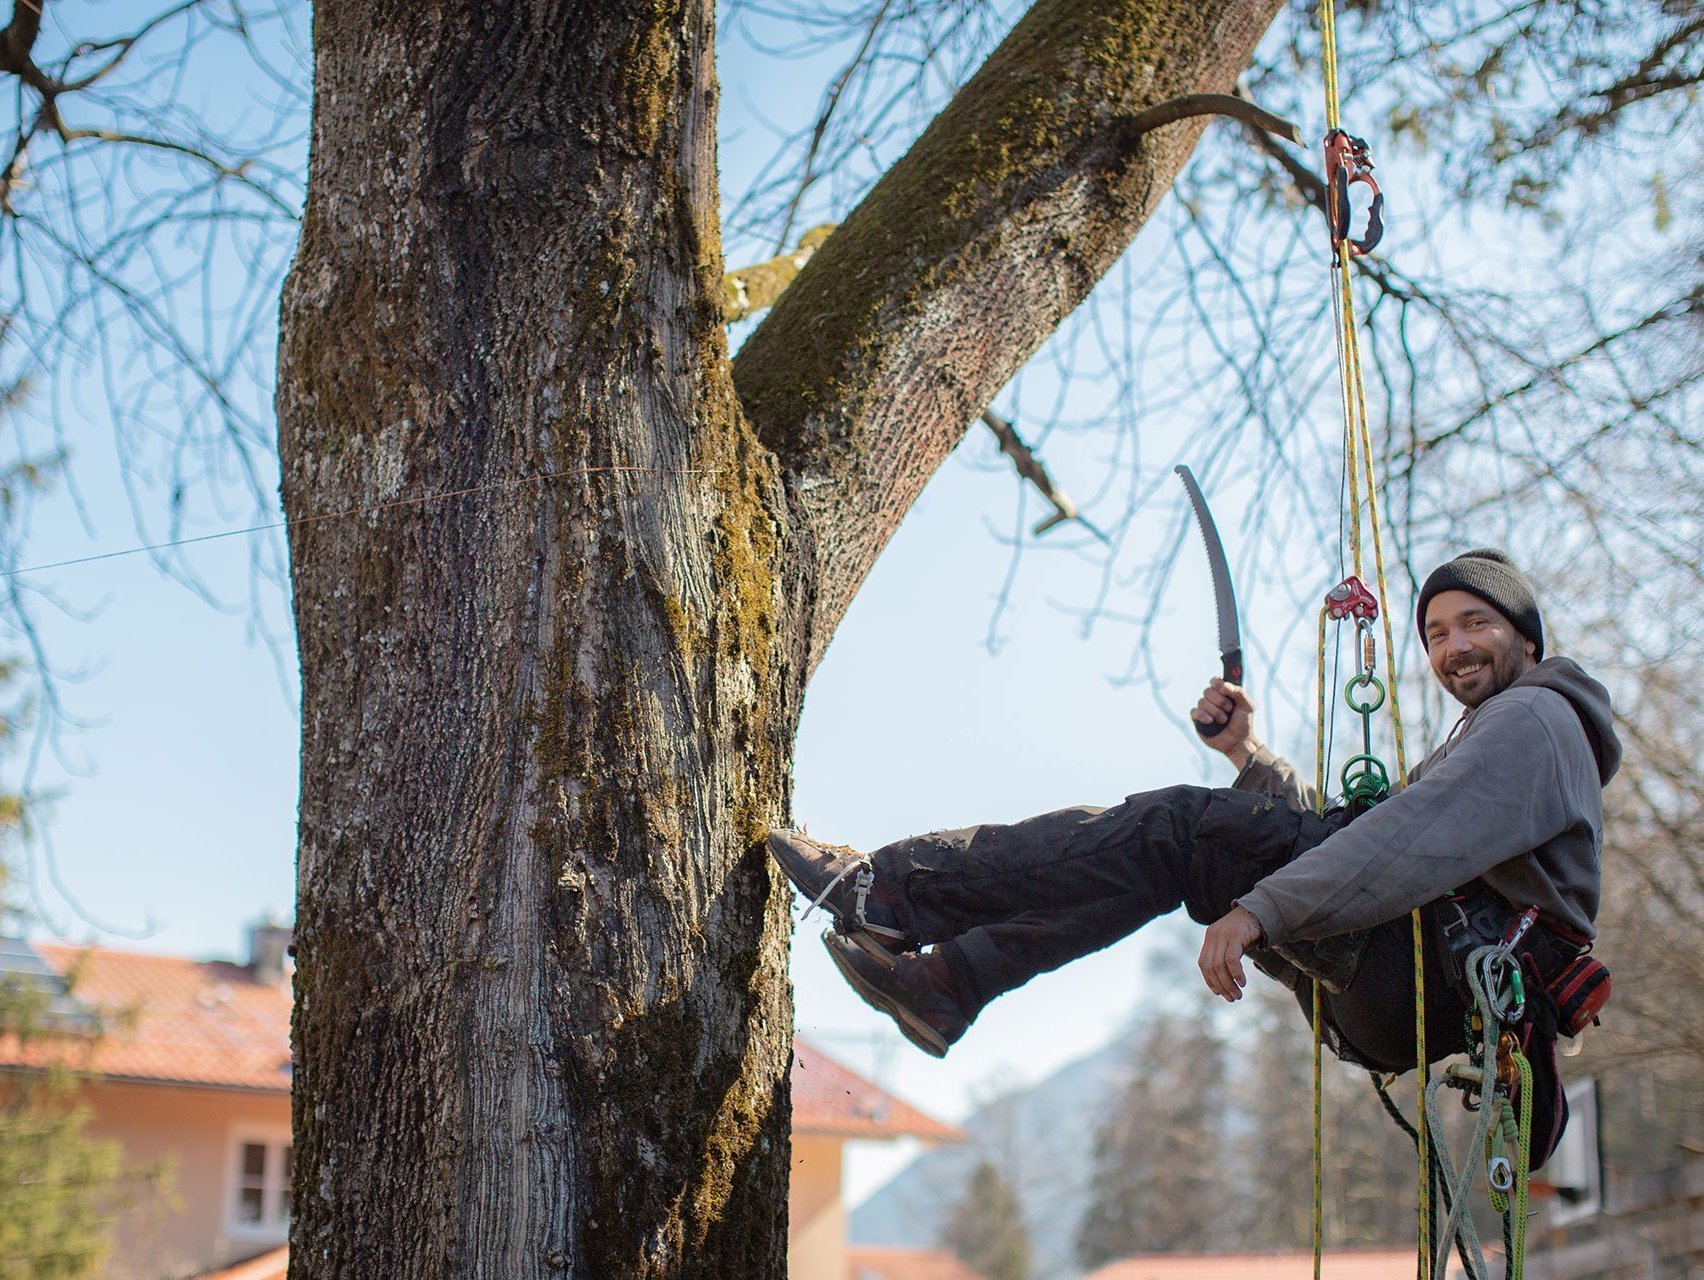 Ein Mann in Arbeitskleidung hängt mit Klettergurt an einem Baum - hält eine Säge in der Hand und lächelt in die Kamera